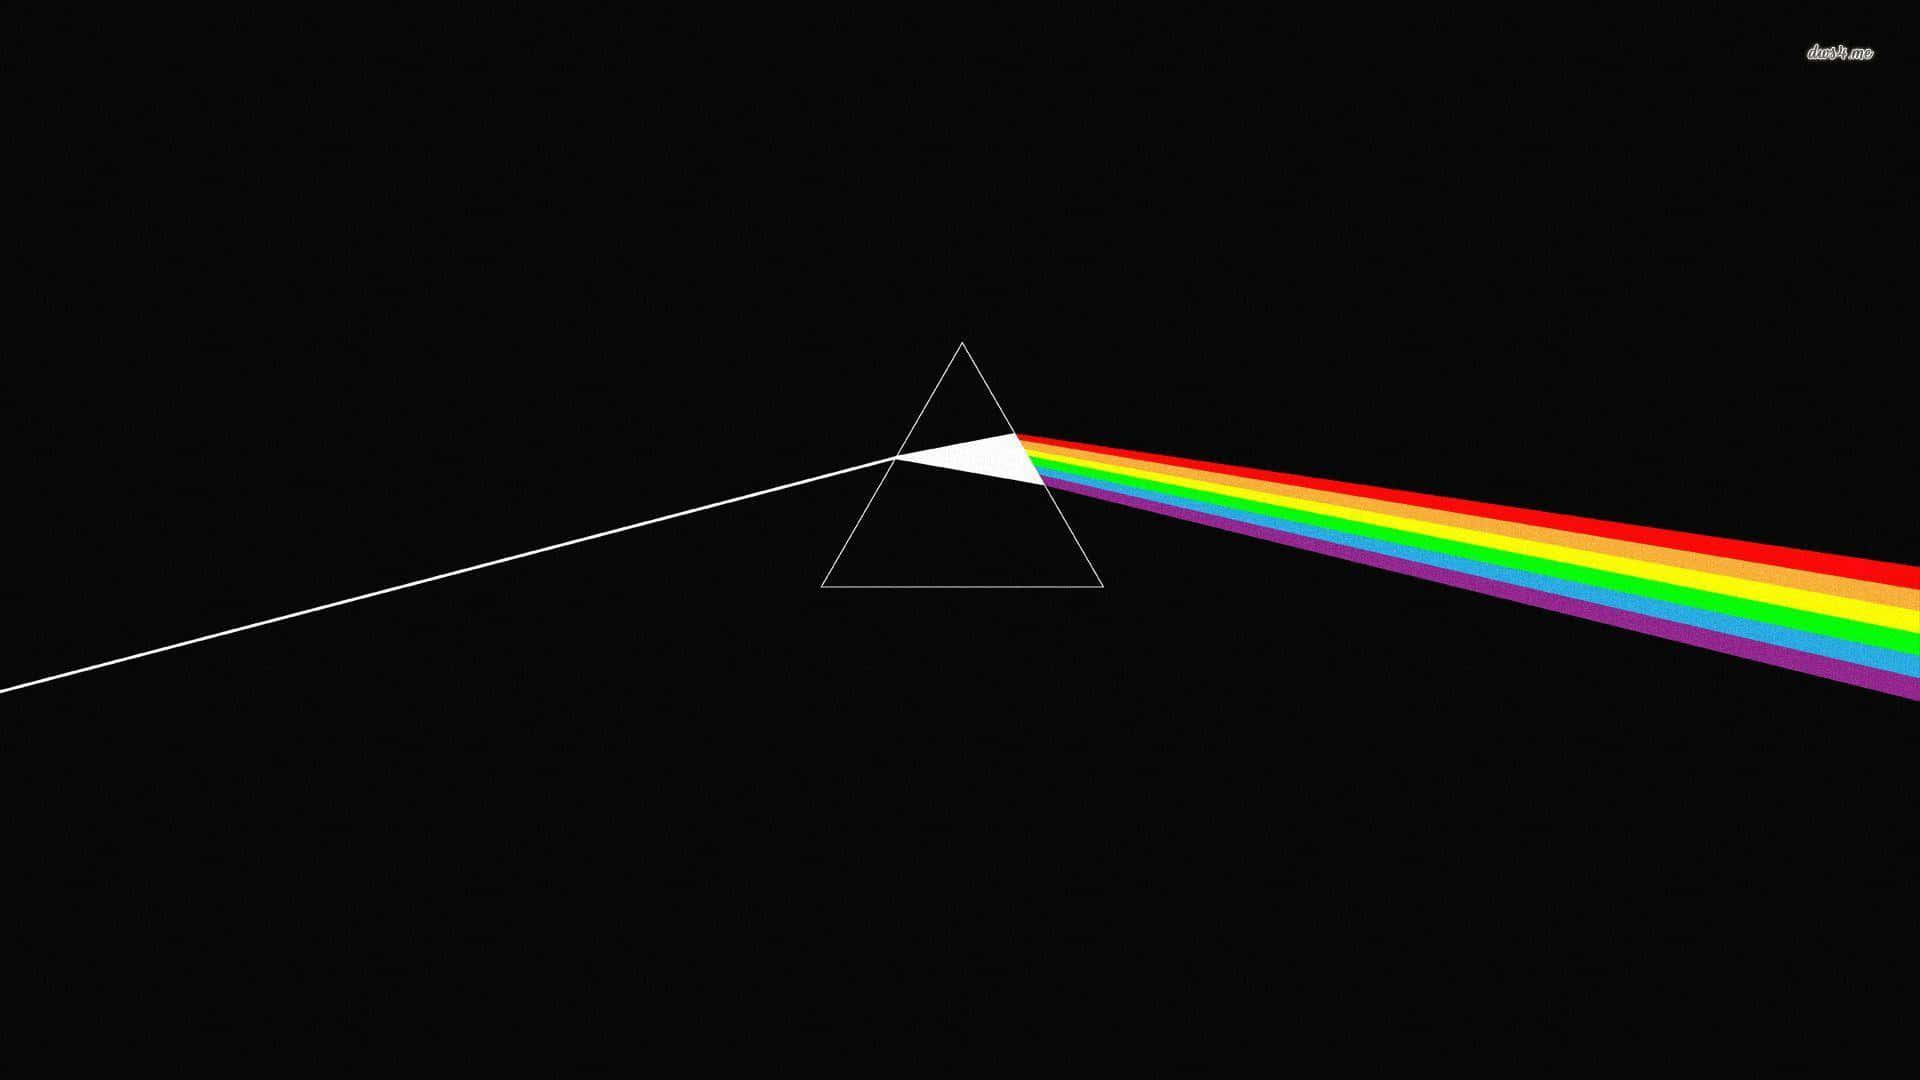 Upplevden Mörka Sidan Av Månen Med Denna Engagerande Pink Floyd-bakgrundsbild. Wallpaper